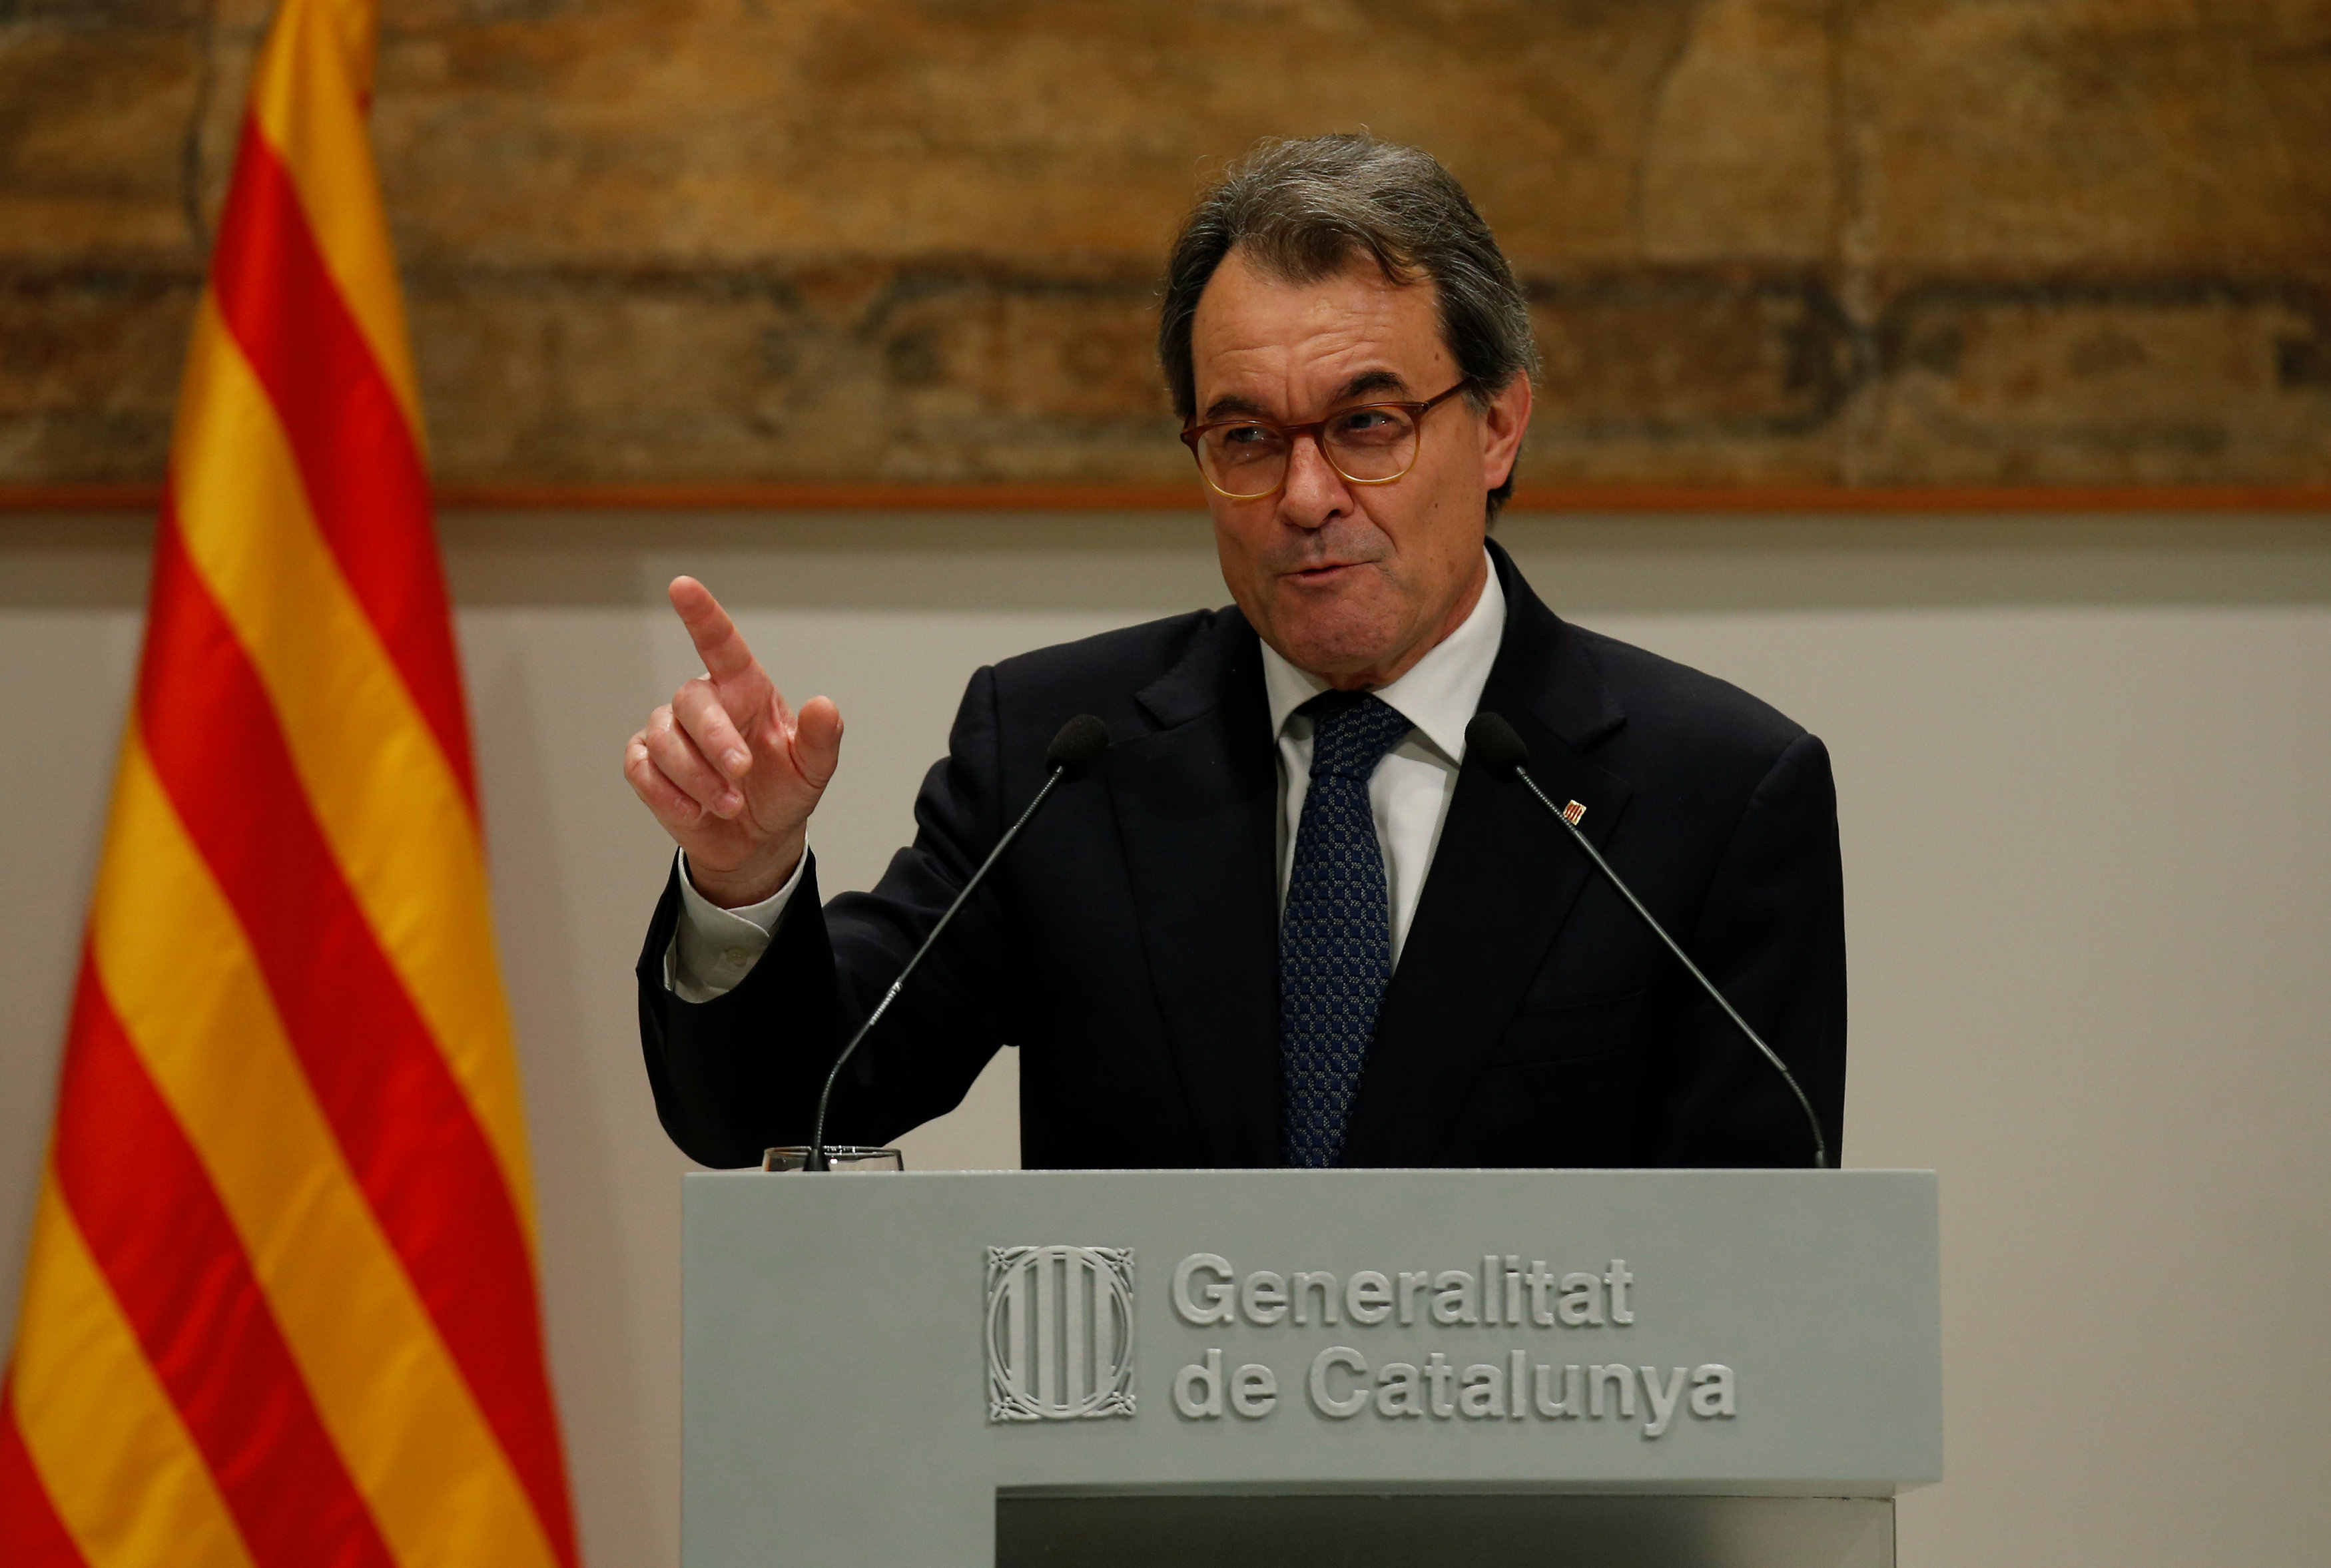 El lunes 6 de febrero inició el juicio contra el expresidente del Gobierno catalán, Artur Mas, por haber realizado la consulta independentista de noviembre de 2014.